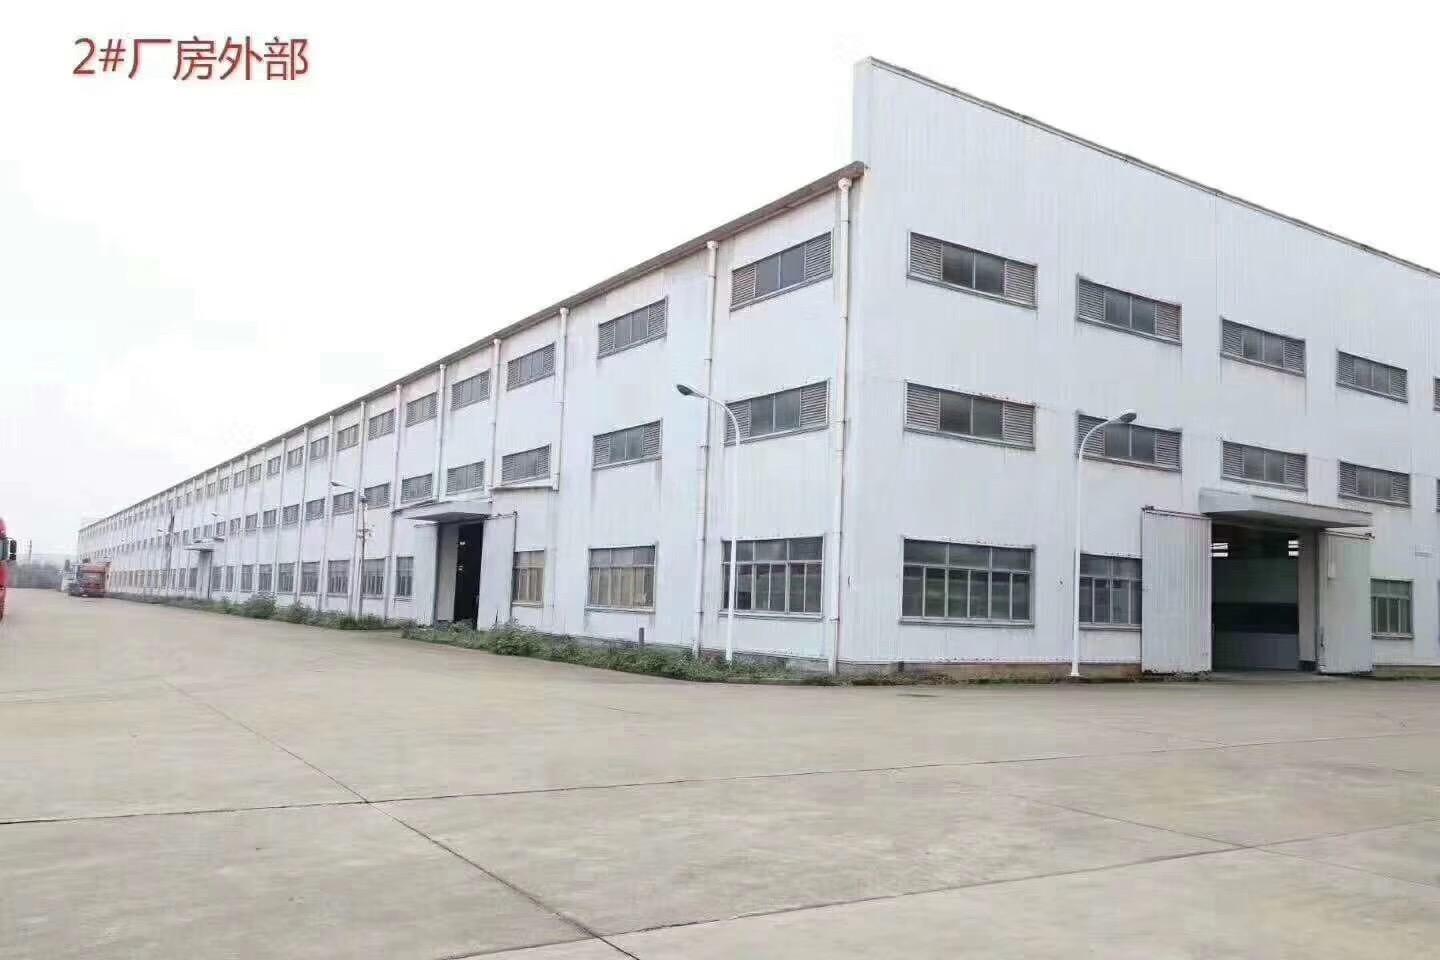 清远石角工业钢构厂房仓库5万方出租滴水11米行吊可污染行业